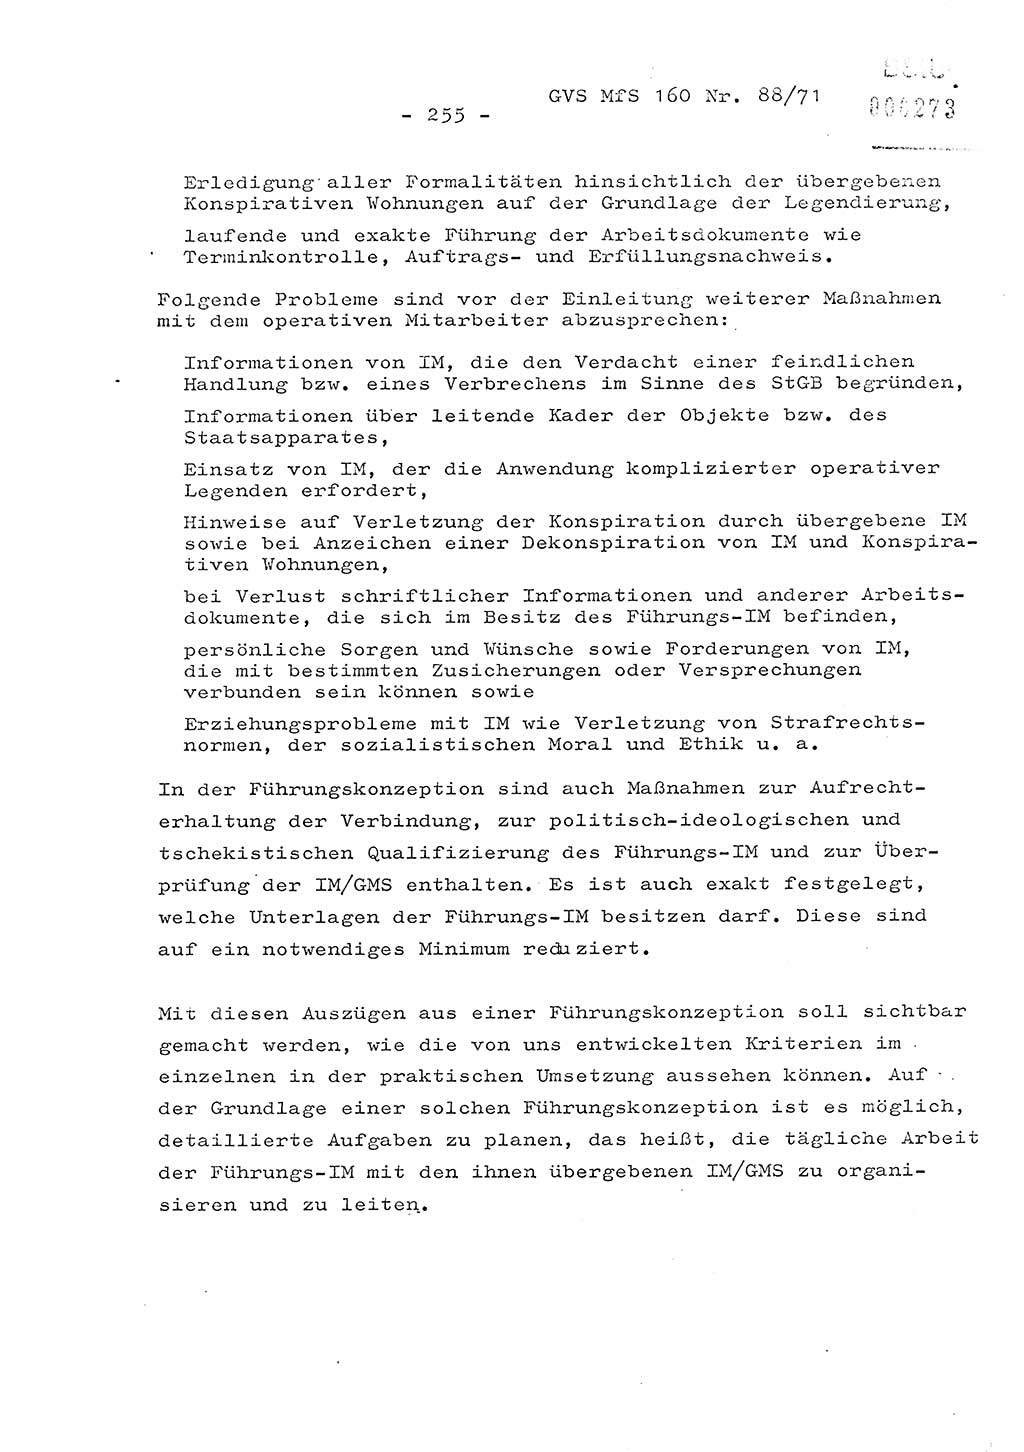 Dissertation Oberstleutnant Josef Schwarz (BV Schwerin), Major Fritz Amm (JHS), Hauptmann Peter Gräßler (JHS), Ministerium für Staatssicherheit (MfS) [Deutsche Demokratische Republik (DDR)], Juristische Hochschule (JHS), Geheime Verschlußsache (GVS) 160-88/71, Potsdam 1972, Seite 255 (Diss. MfS DDR JHS GVS 160-88/71 1972, S. 255)